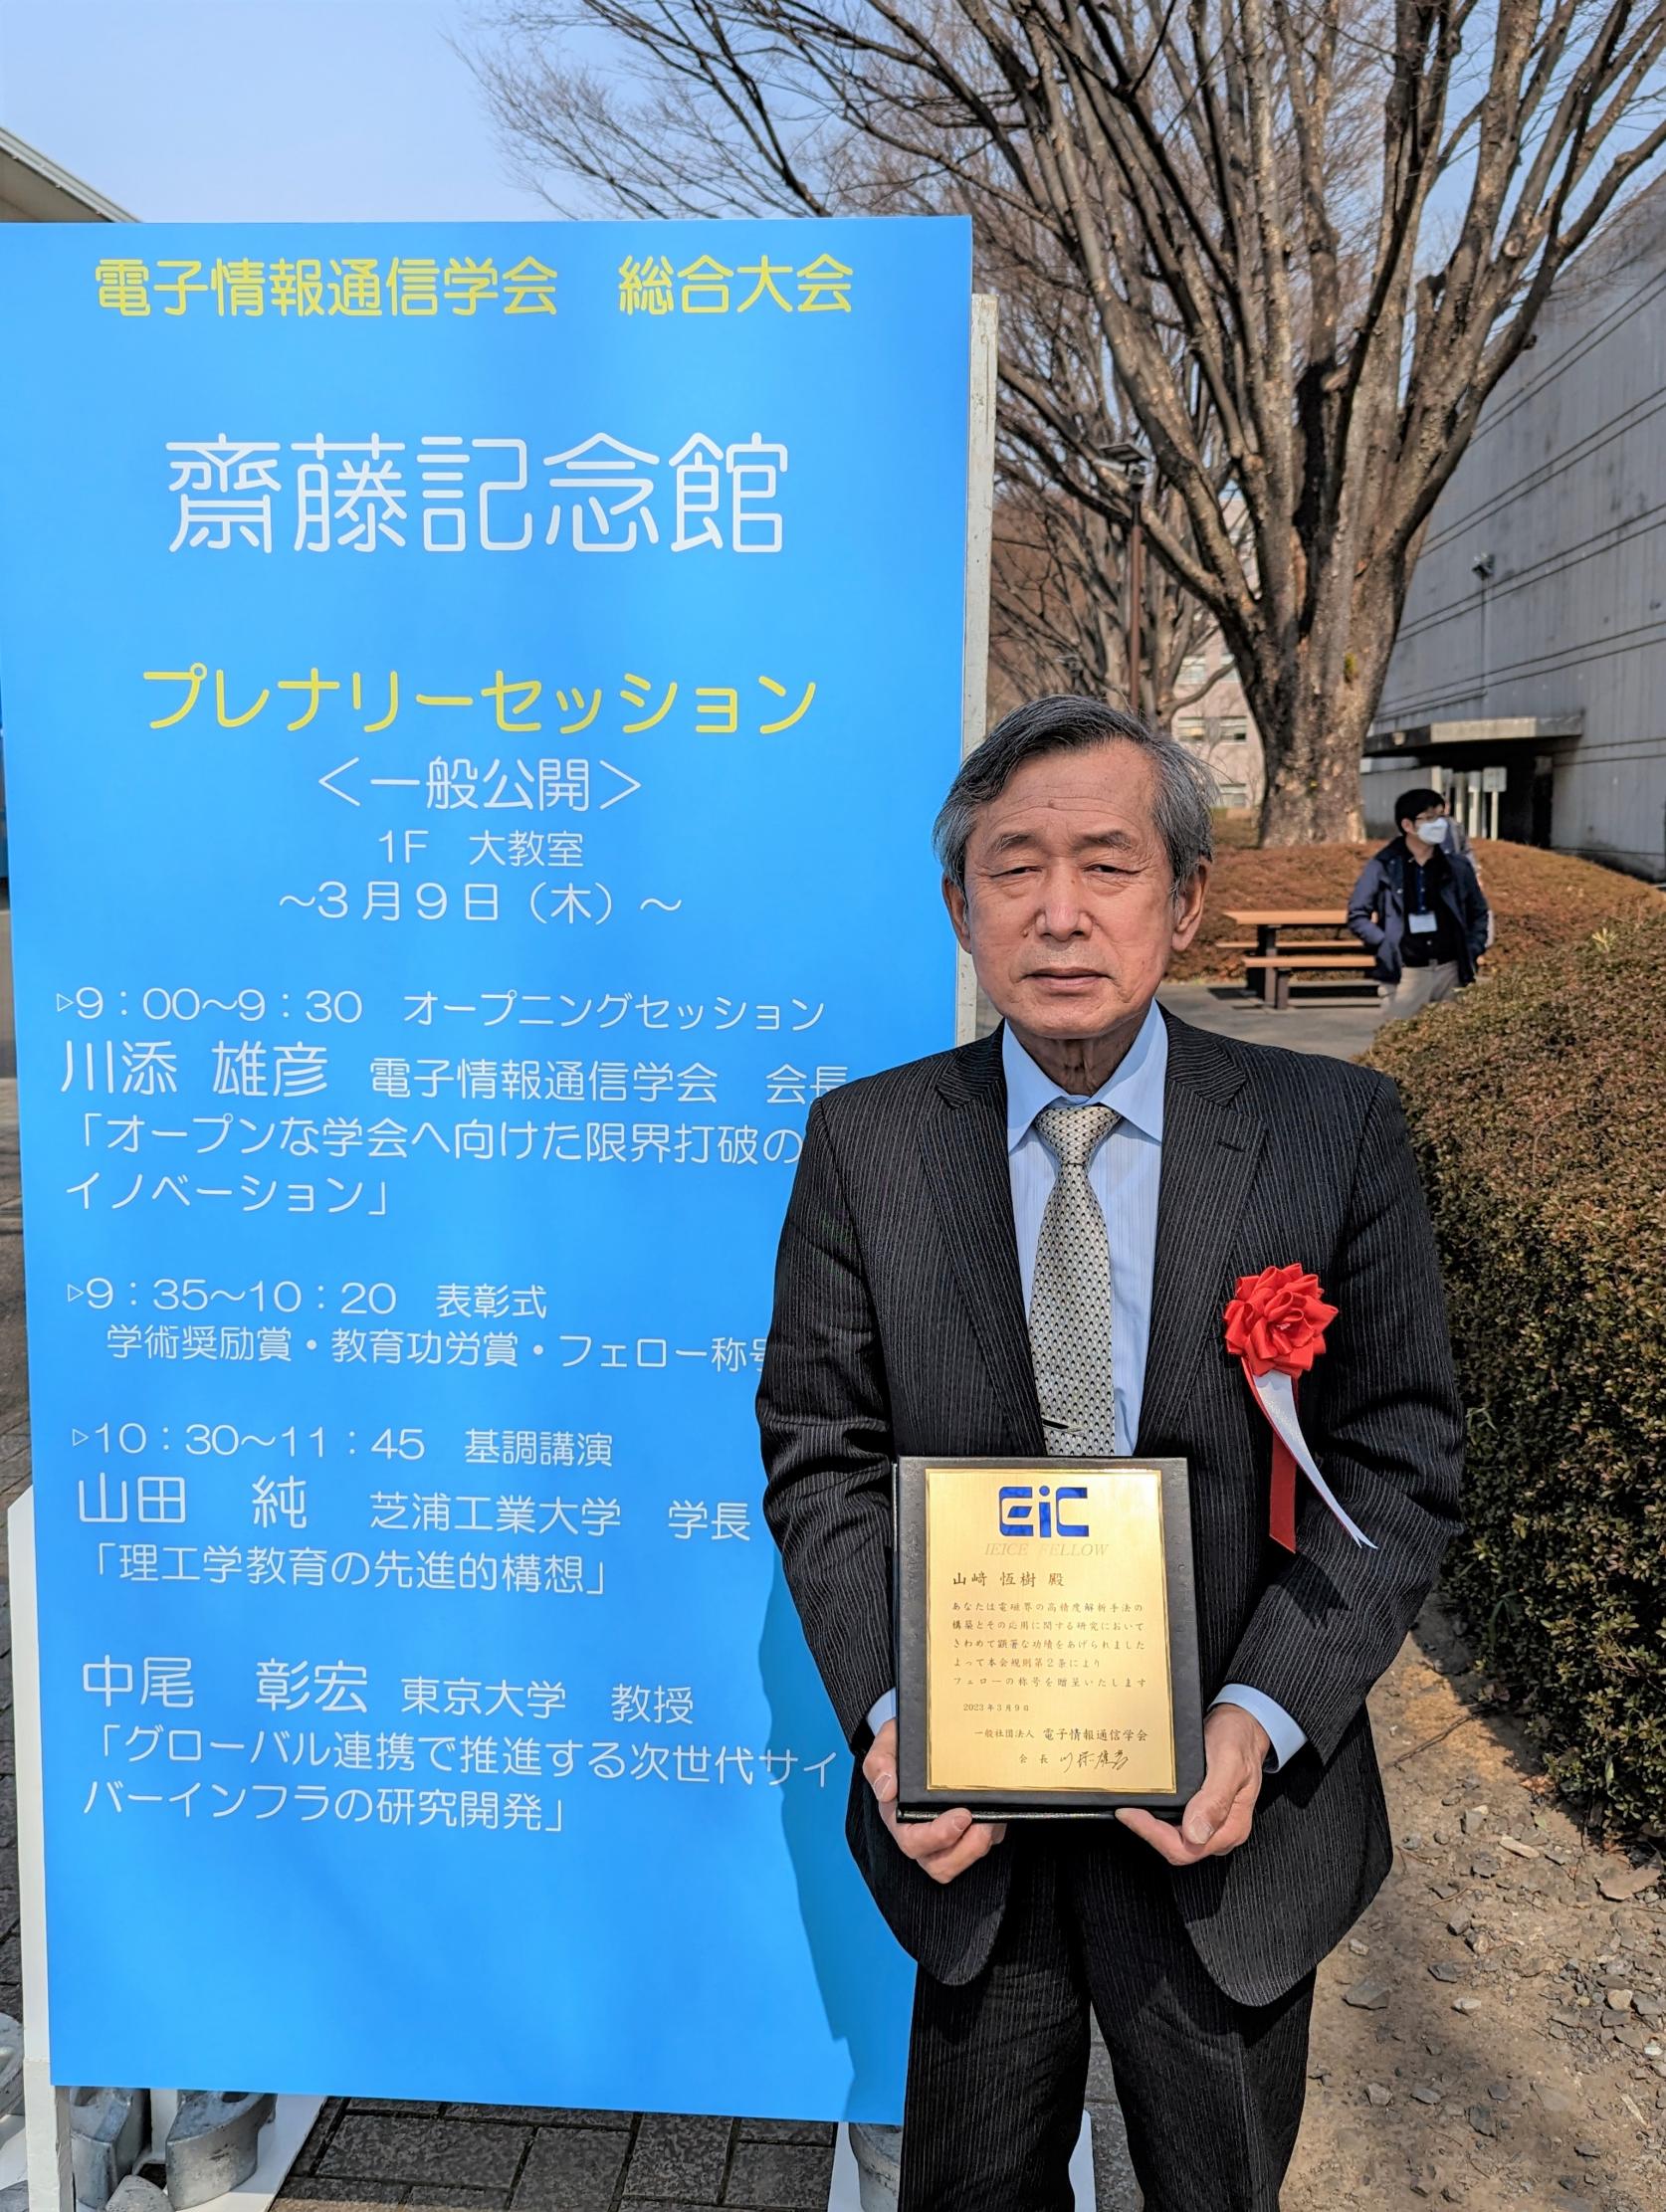 日本大学名誉教授 山﨑恆樹先生（元：理工学部 電気工学科教授）が、電子情報通信学会よりフェローの称号を授与されました。